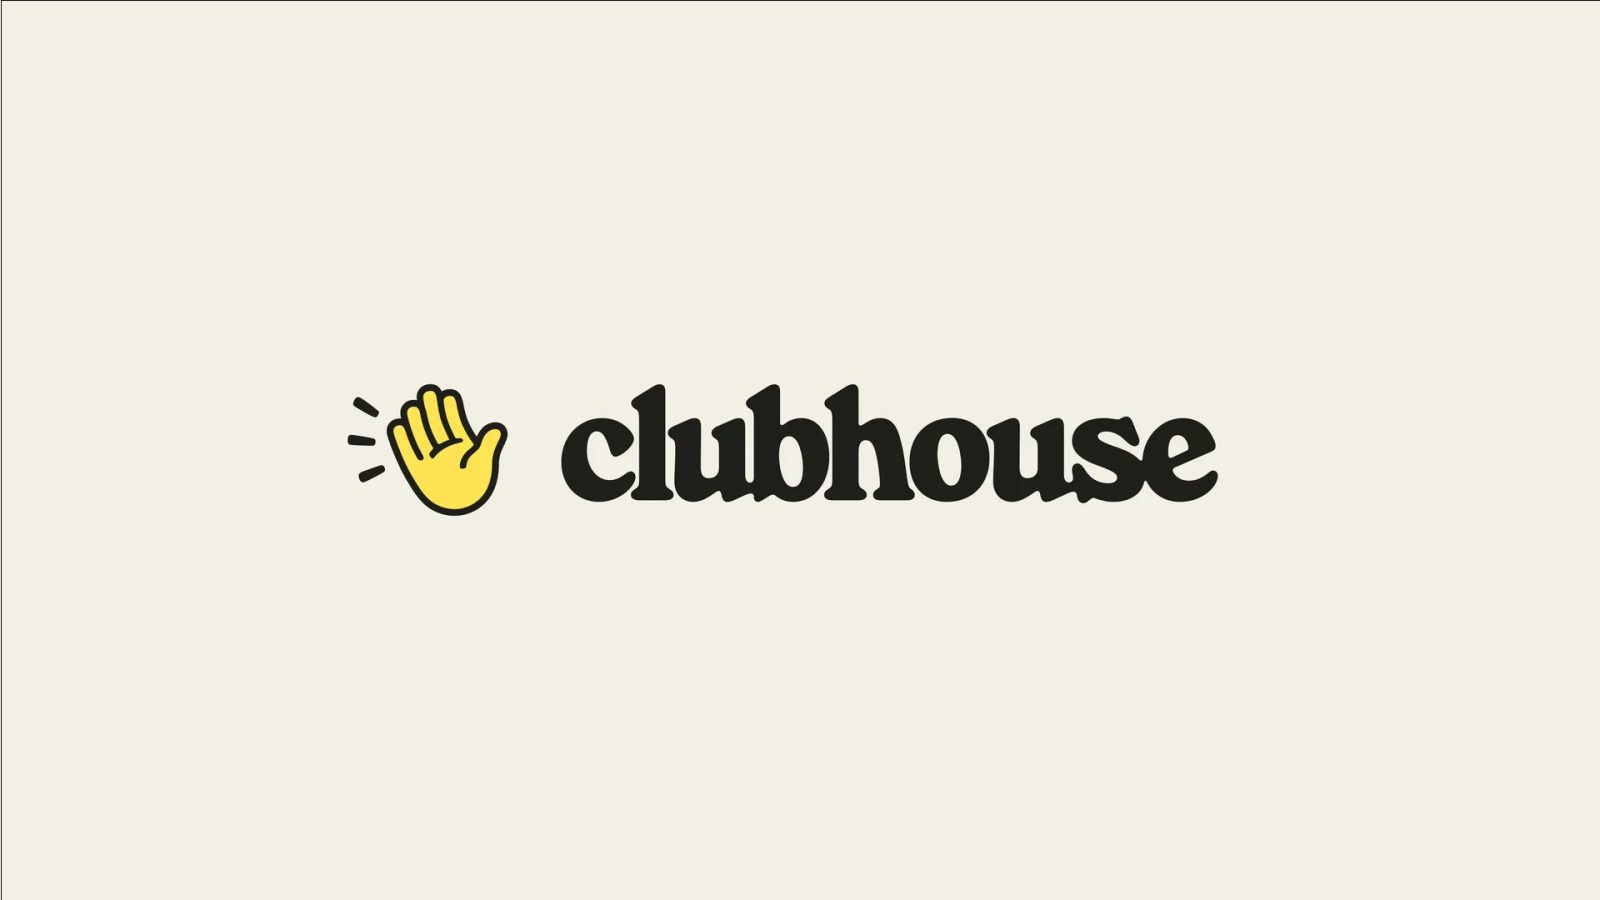 Clubhouse увольняет половину своих сотрудников, поскольку платформа изо всех сил пытается оставаться актуальной